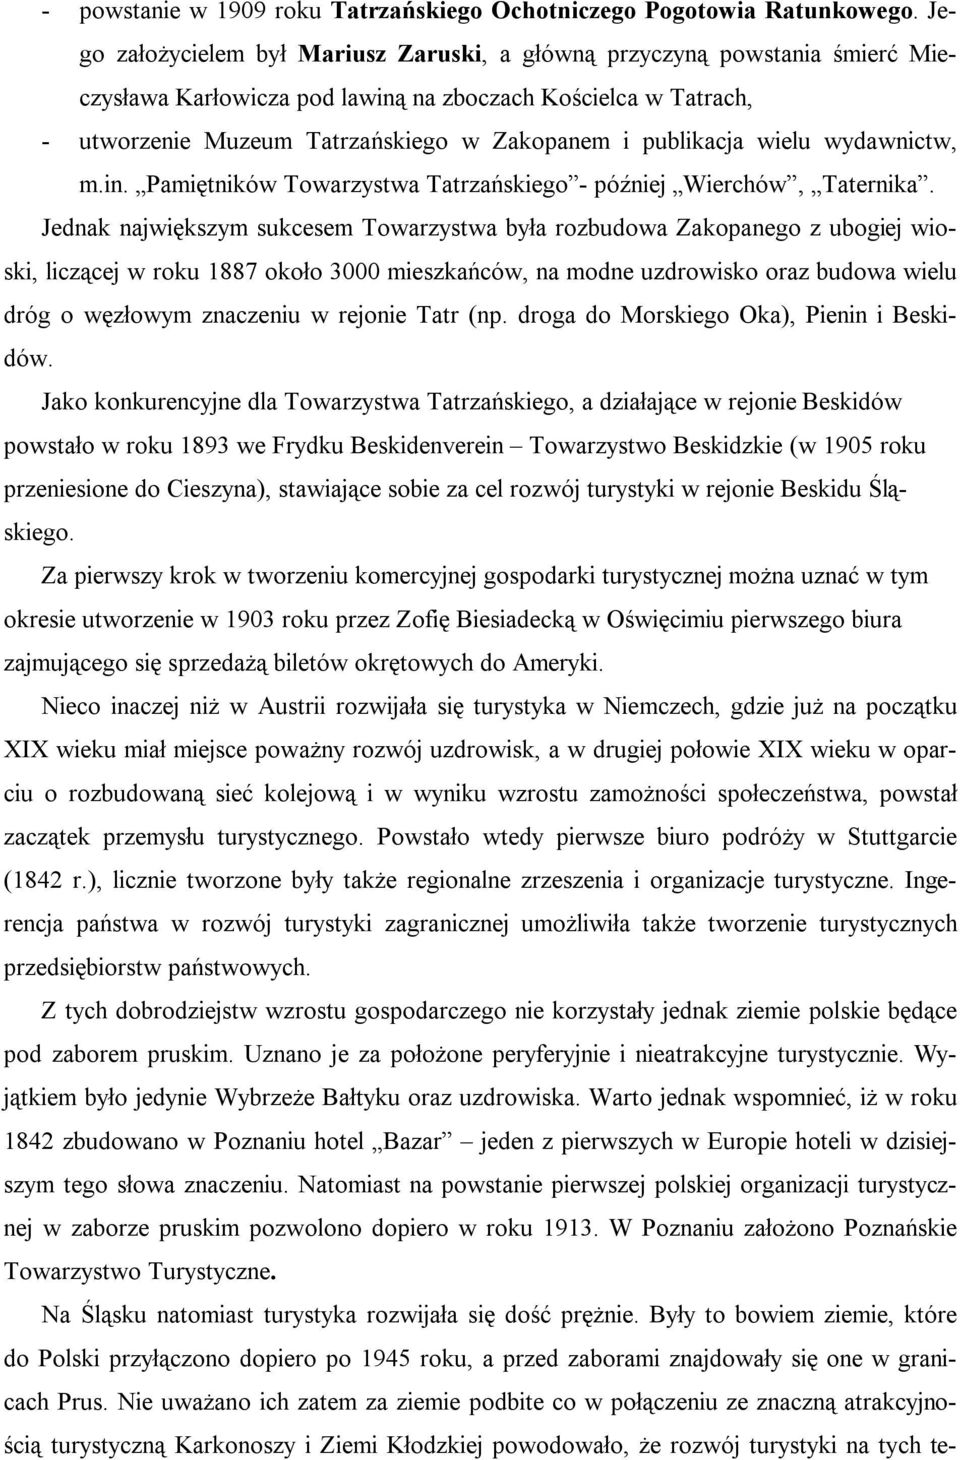 publikacja wielu wydawnictw, m.in. Pamiętników Towarzystwa Tatrzańskiego - później Wierchów, Taternika.